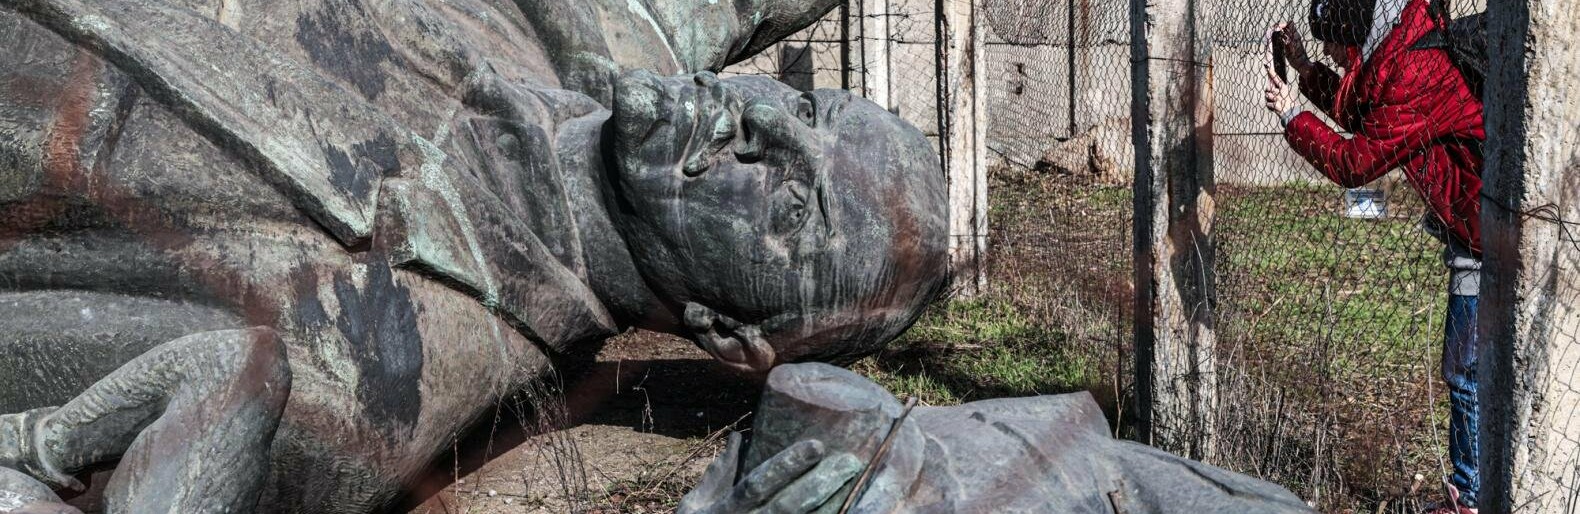 Продати Леніна: у Запоріжжі хочуть заробити на продажі пам’ятника. Згадуємо, як його демонтовували, та яка ситуація в інших містах